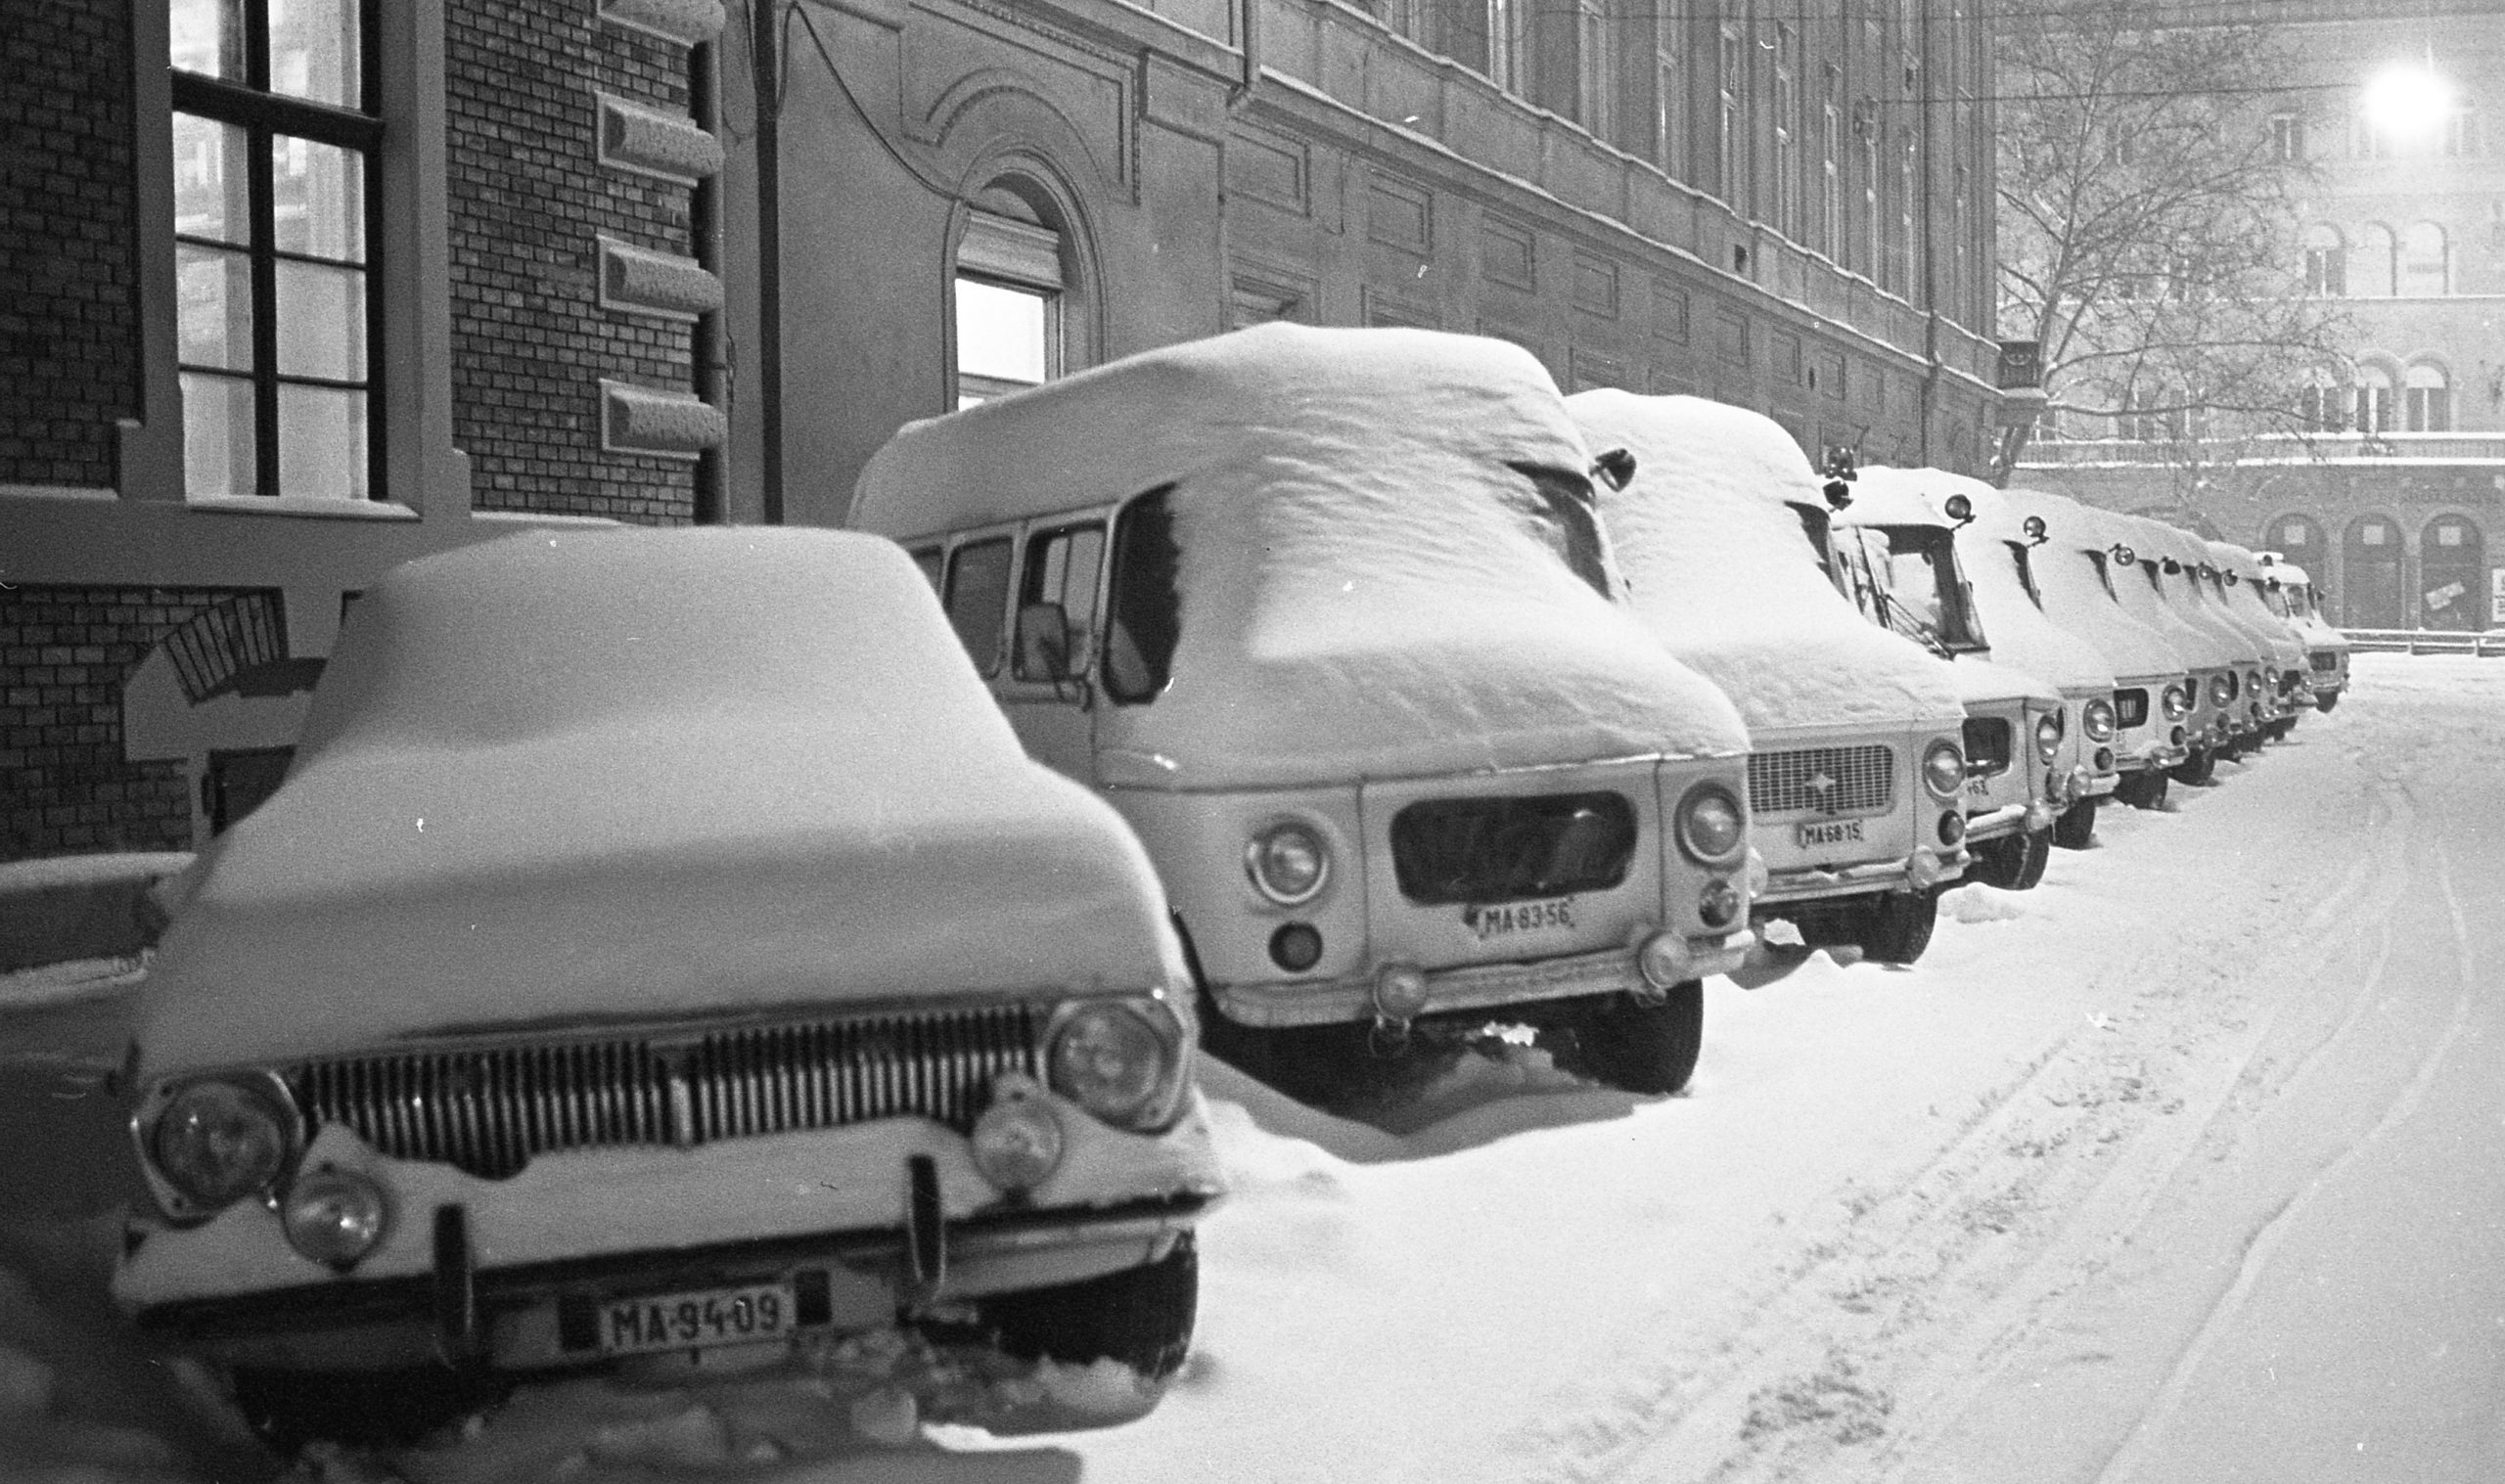 Denkwürdigster Schneefall Ungarns war genau vor 35 Jahren - Fotos!